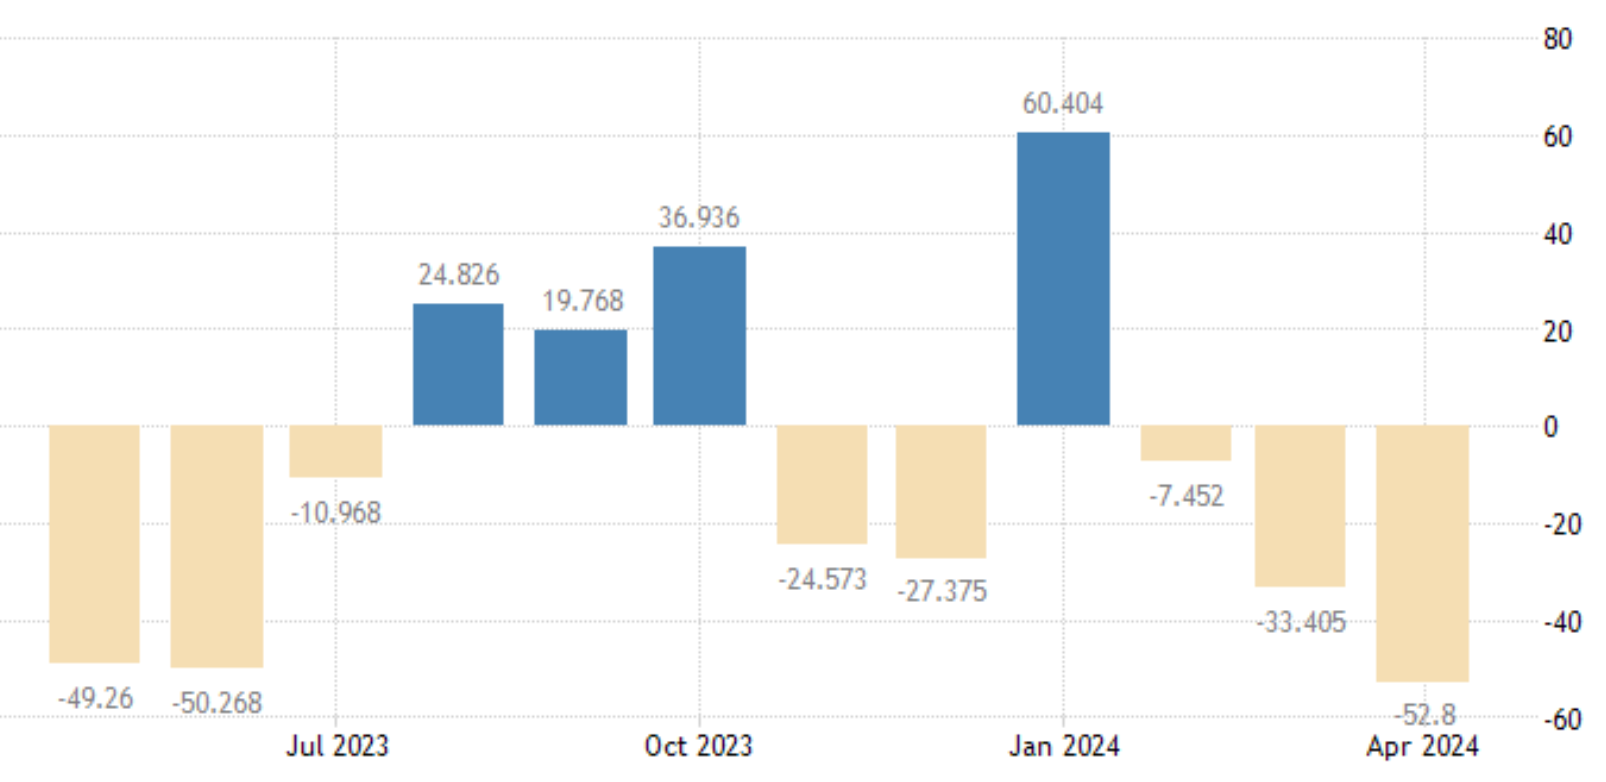 La variación del desempleo en España descendió a -52,80 miles en abril, frente a los -33,41 miles de marzo